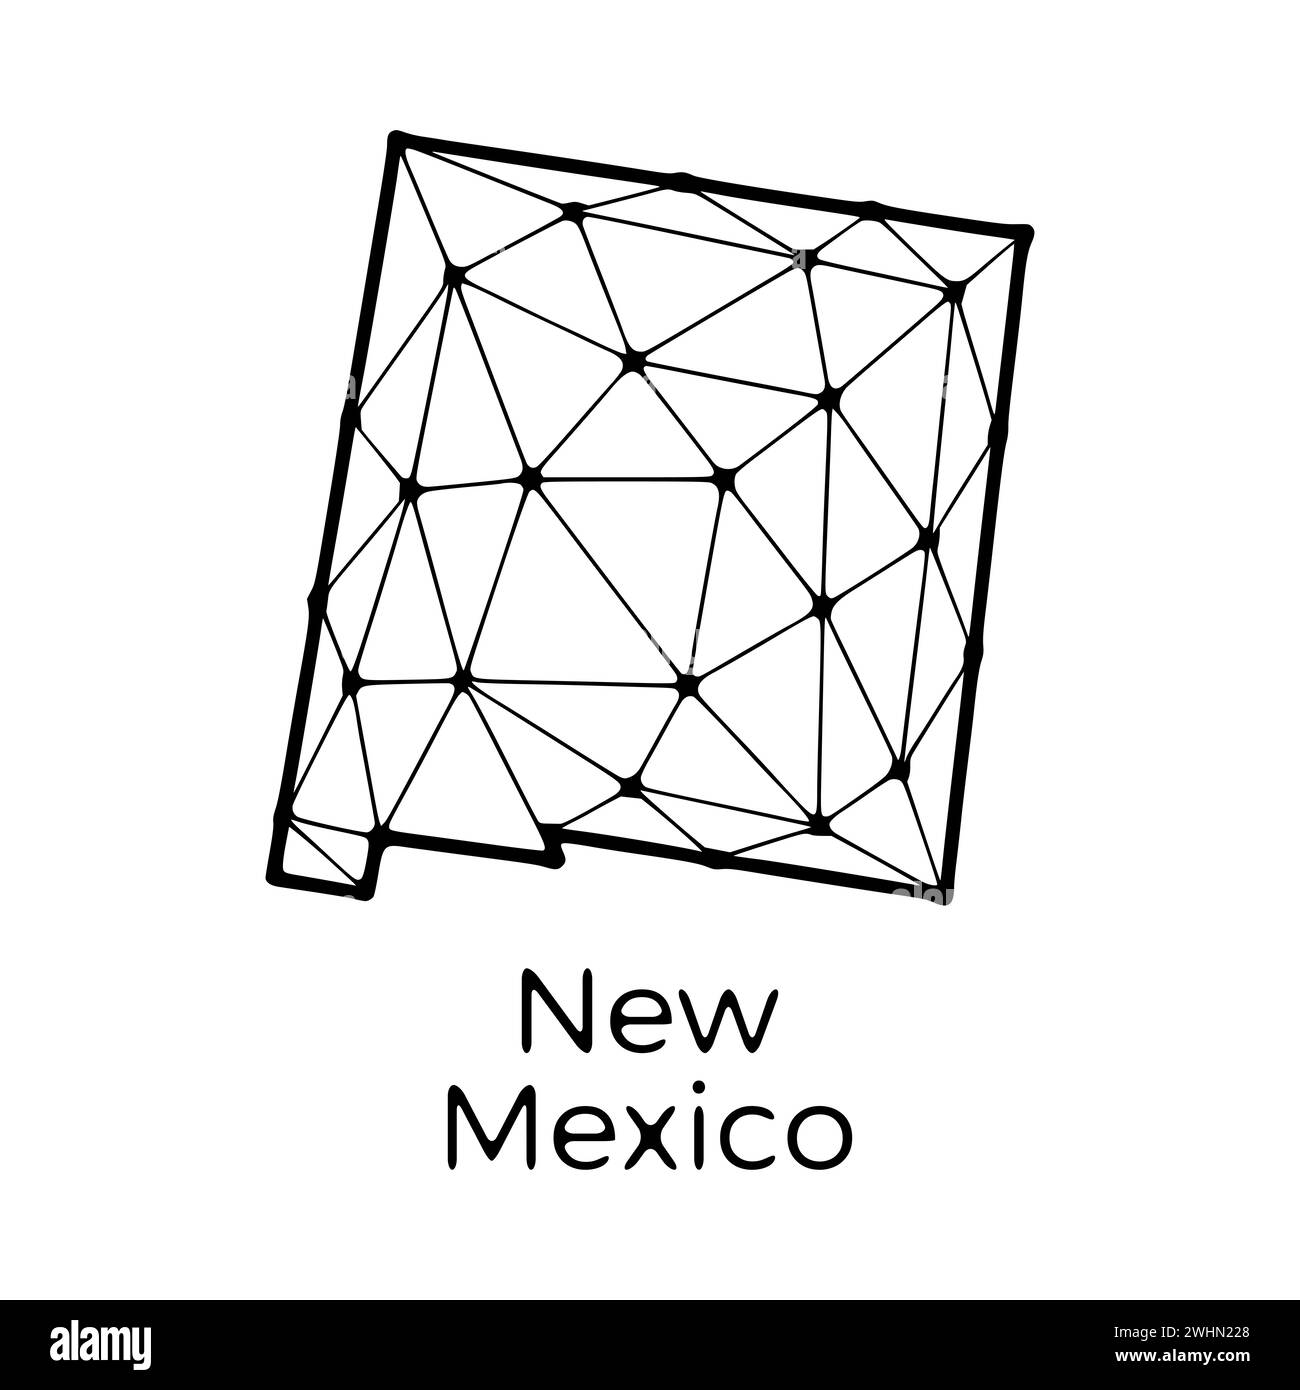 New Mexico State Map polygonale Abbildung aus Linien und Punkten, isoliert auf weißem Hintergrund. US-Bundesstaat mit niedrigem Poly-Design Stockfoto